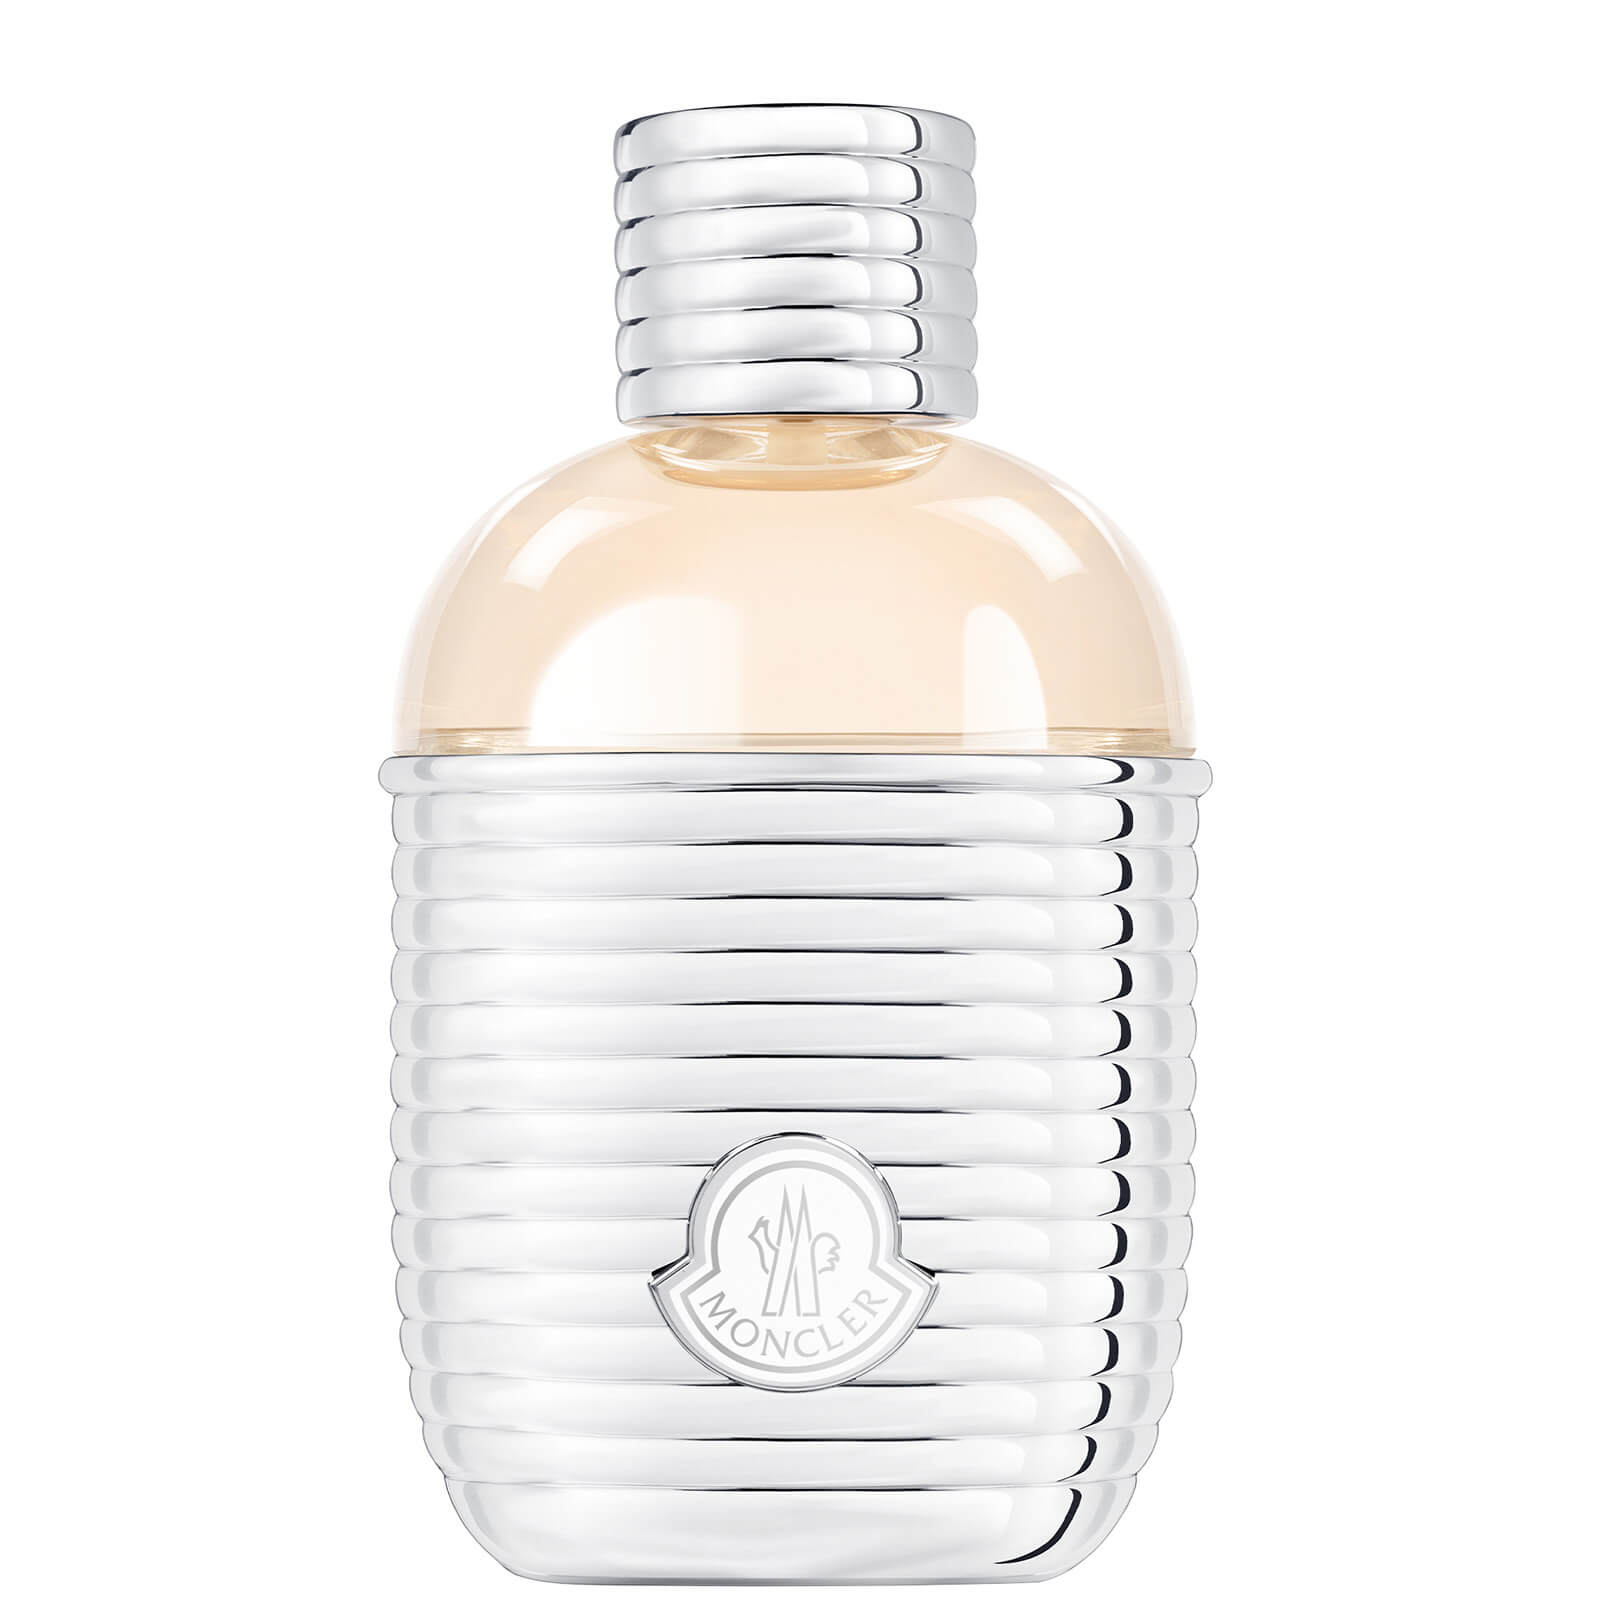 Photos - Women's Fragrance Moncler Pour Femme Eau de Parfum 100ml MC002A01 